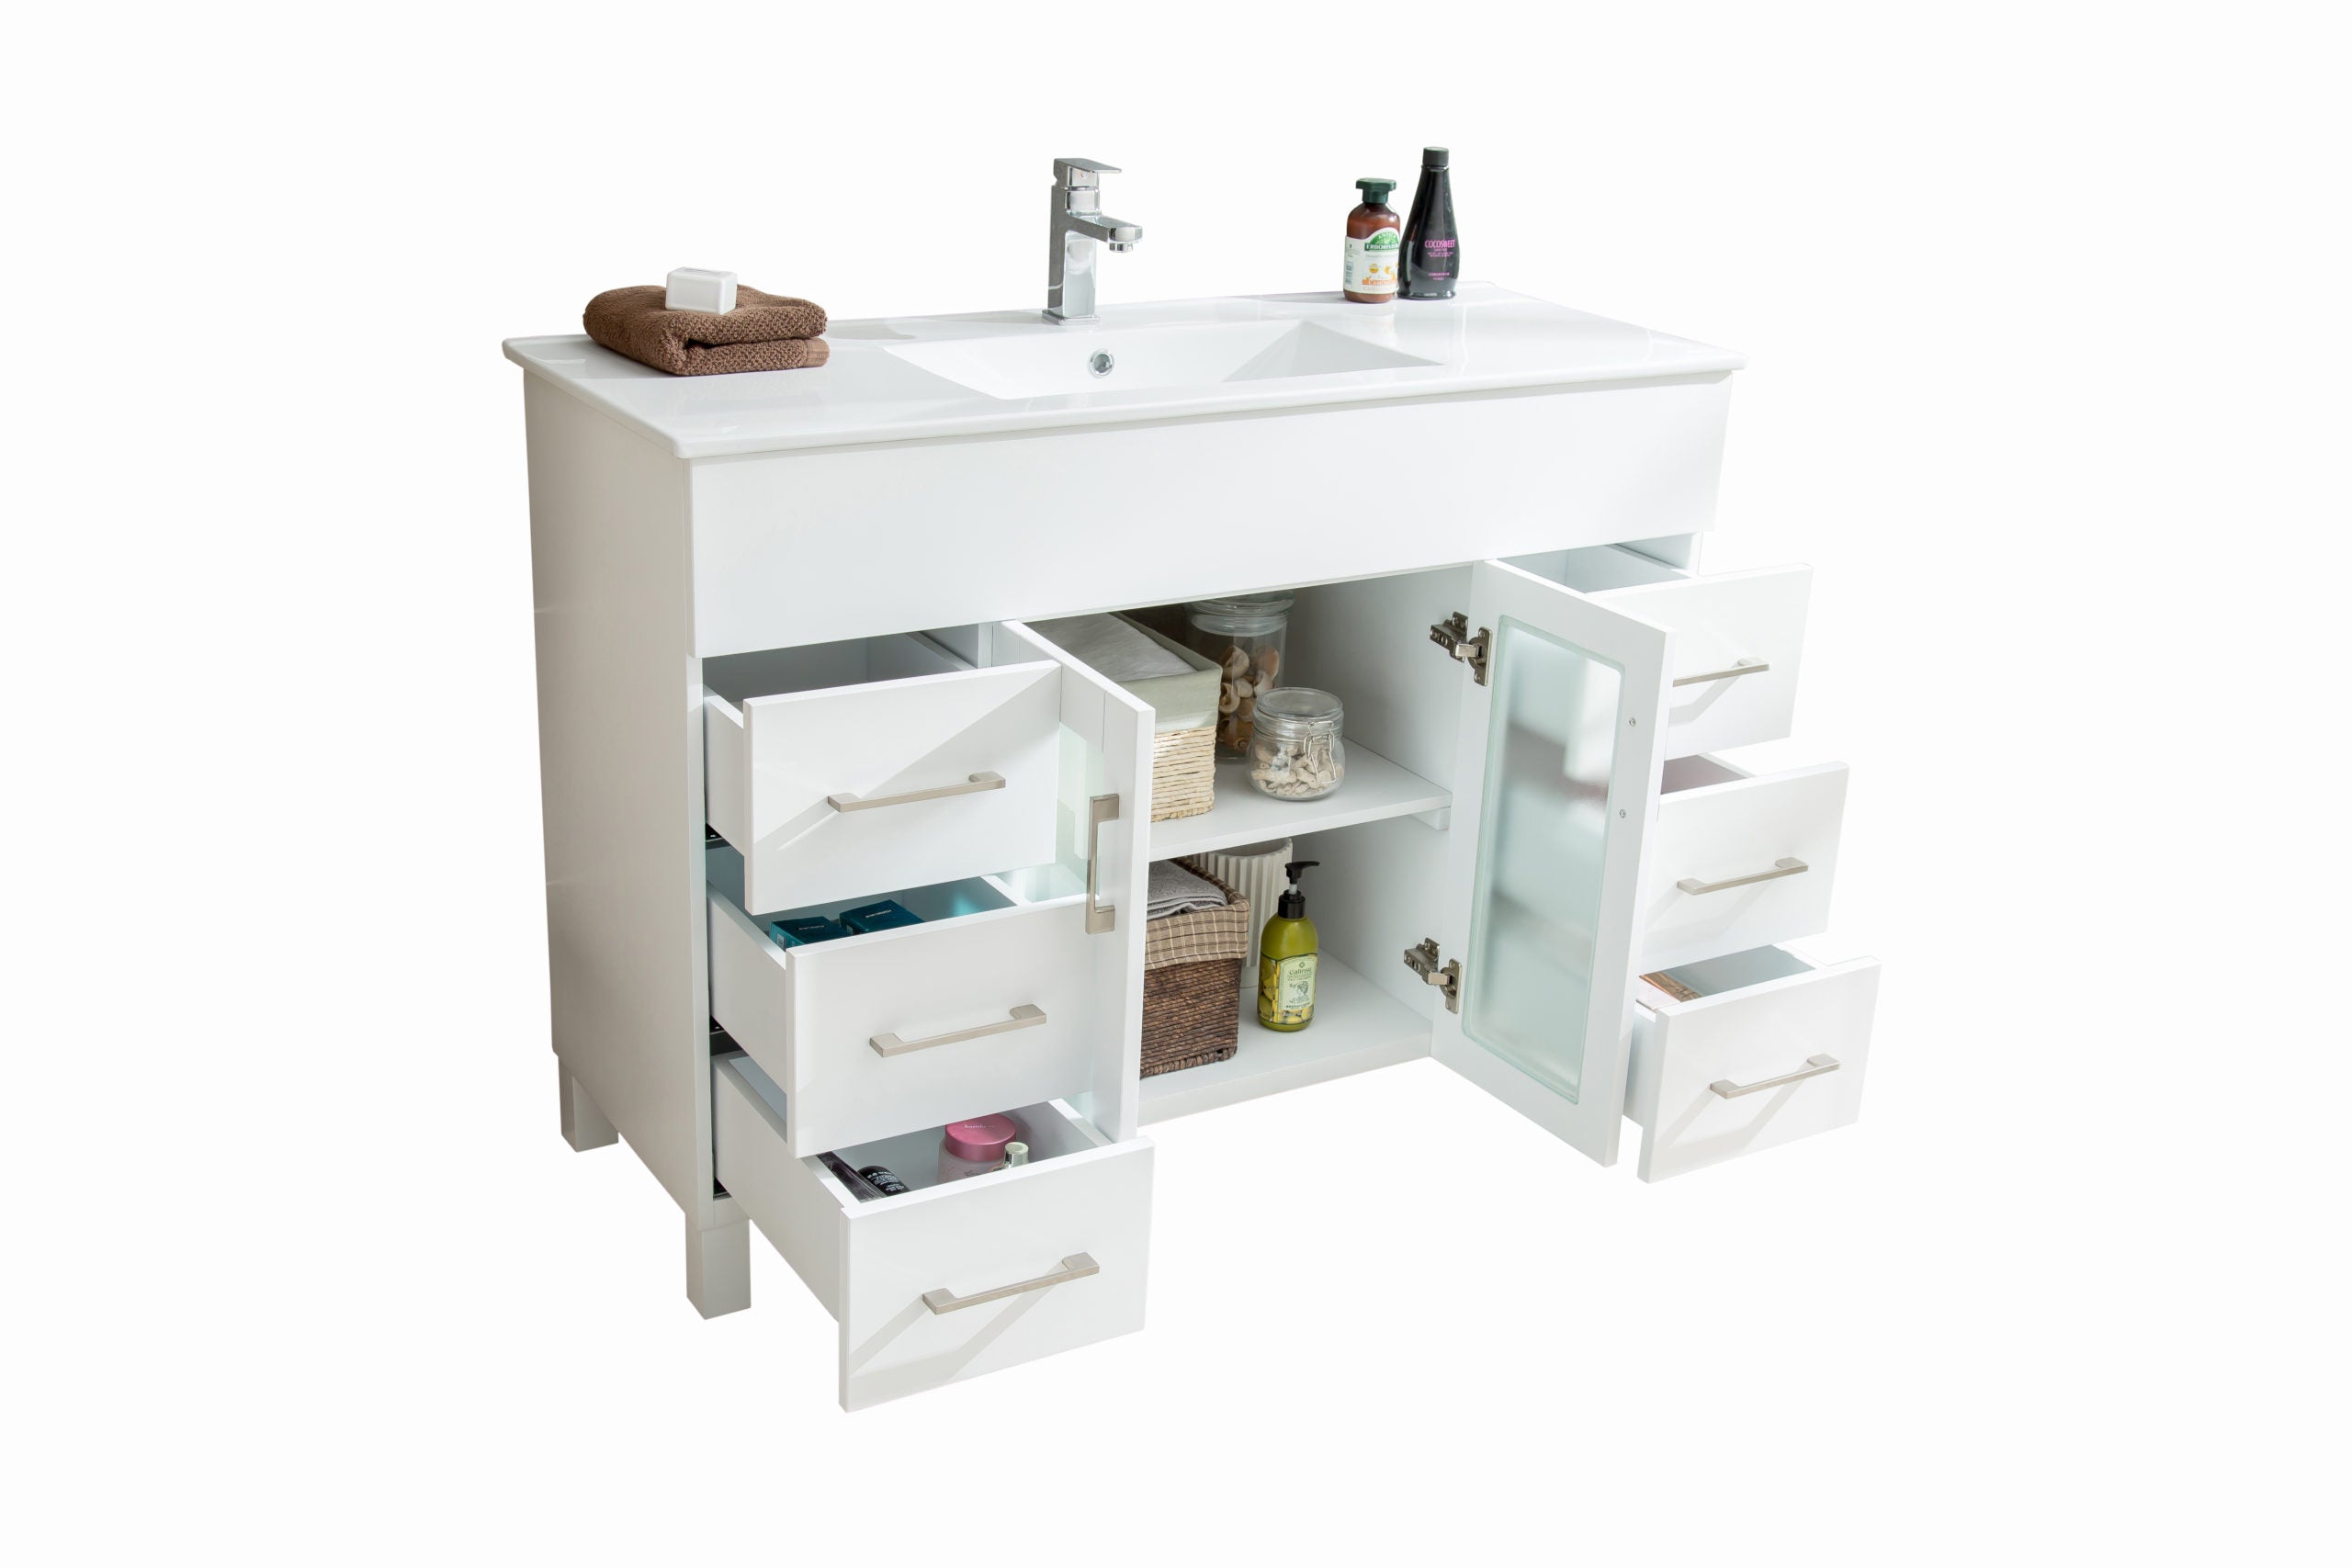 Laviva Nova 48" White Bathroom Vanity with White Ceramic Basin Countertop | 31321529-48W-CB